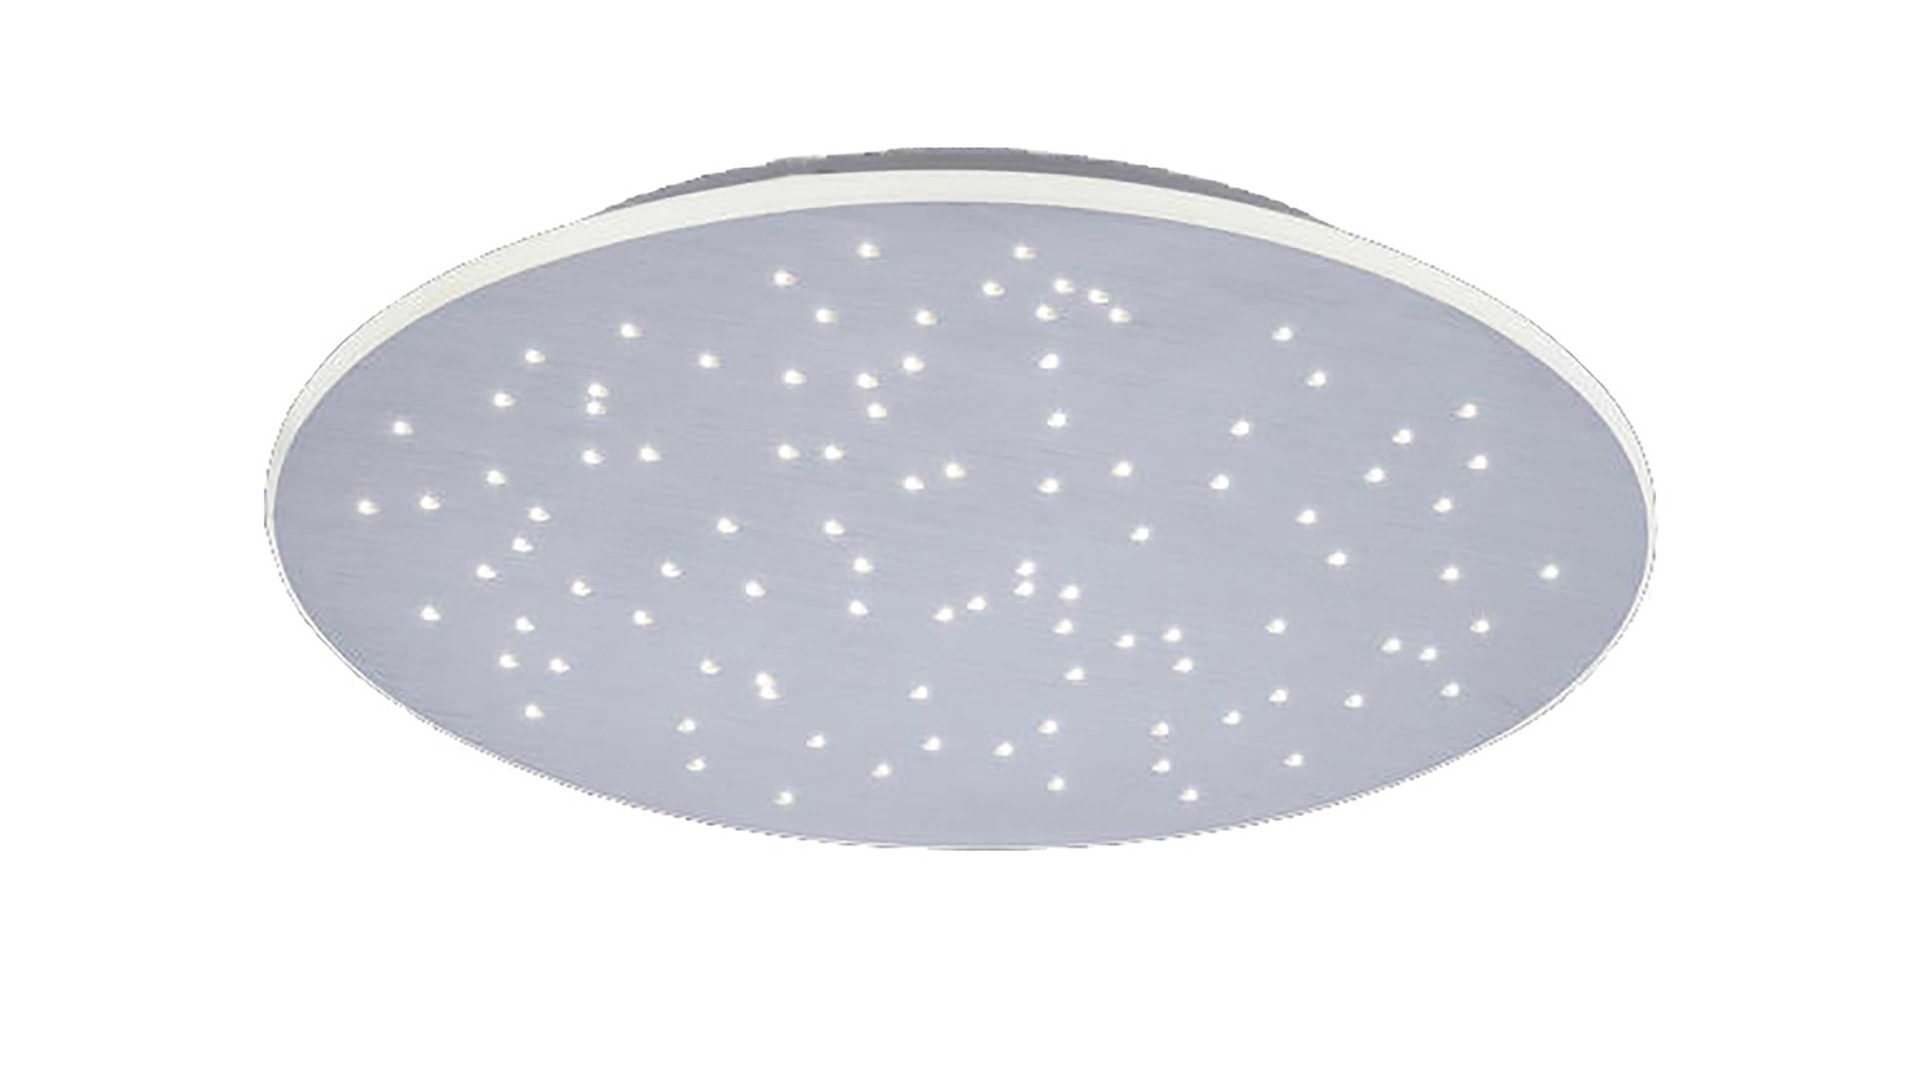 LeuchtenDirekt Deckenlampe Spheric, weißer Kunststoff - Durchmesser ca. 48  cm, Lamstedt, Cuxhaven, Bremerhaven | Deckenlampen